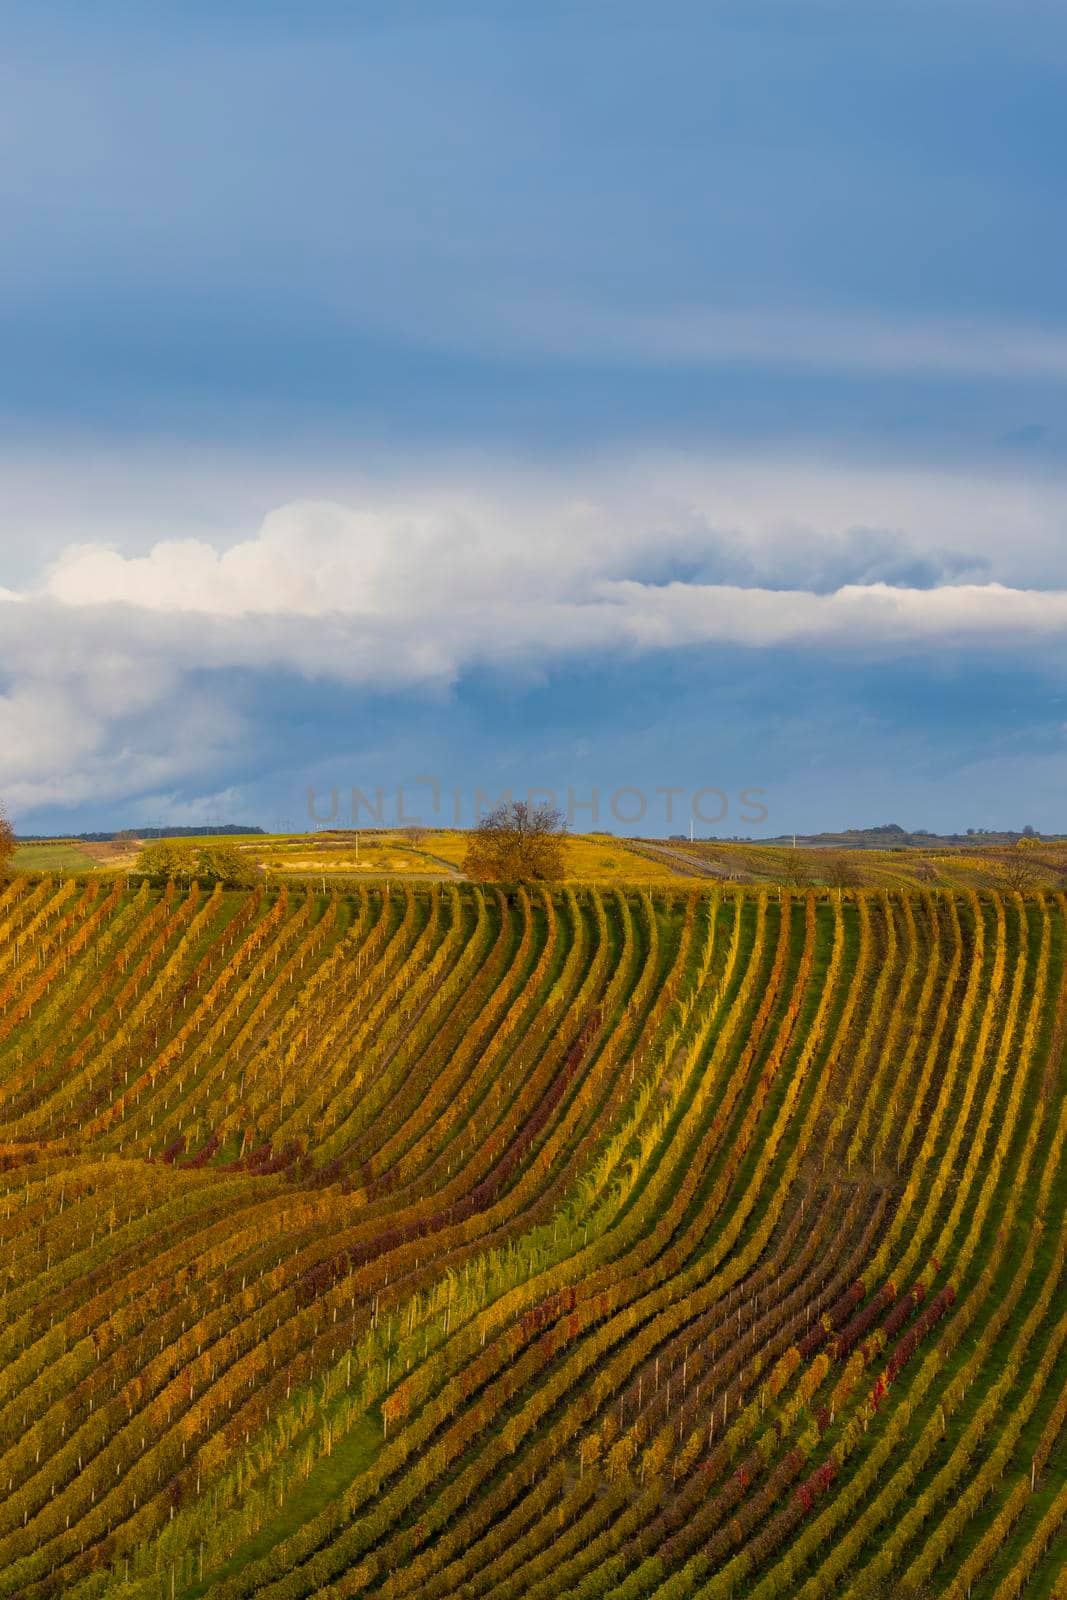 Autumn vineyard near Cejkovice, Southern Moravia, Czech Republic by phbcz